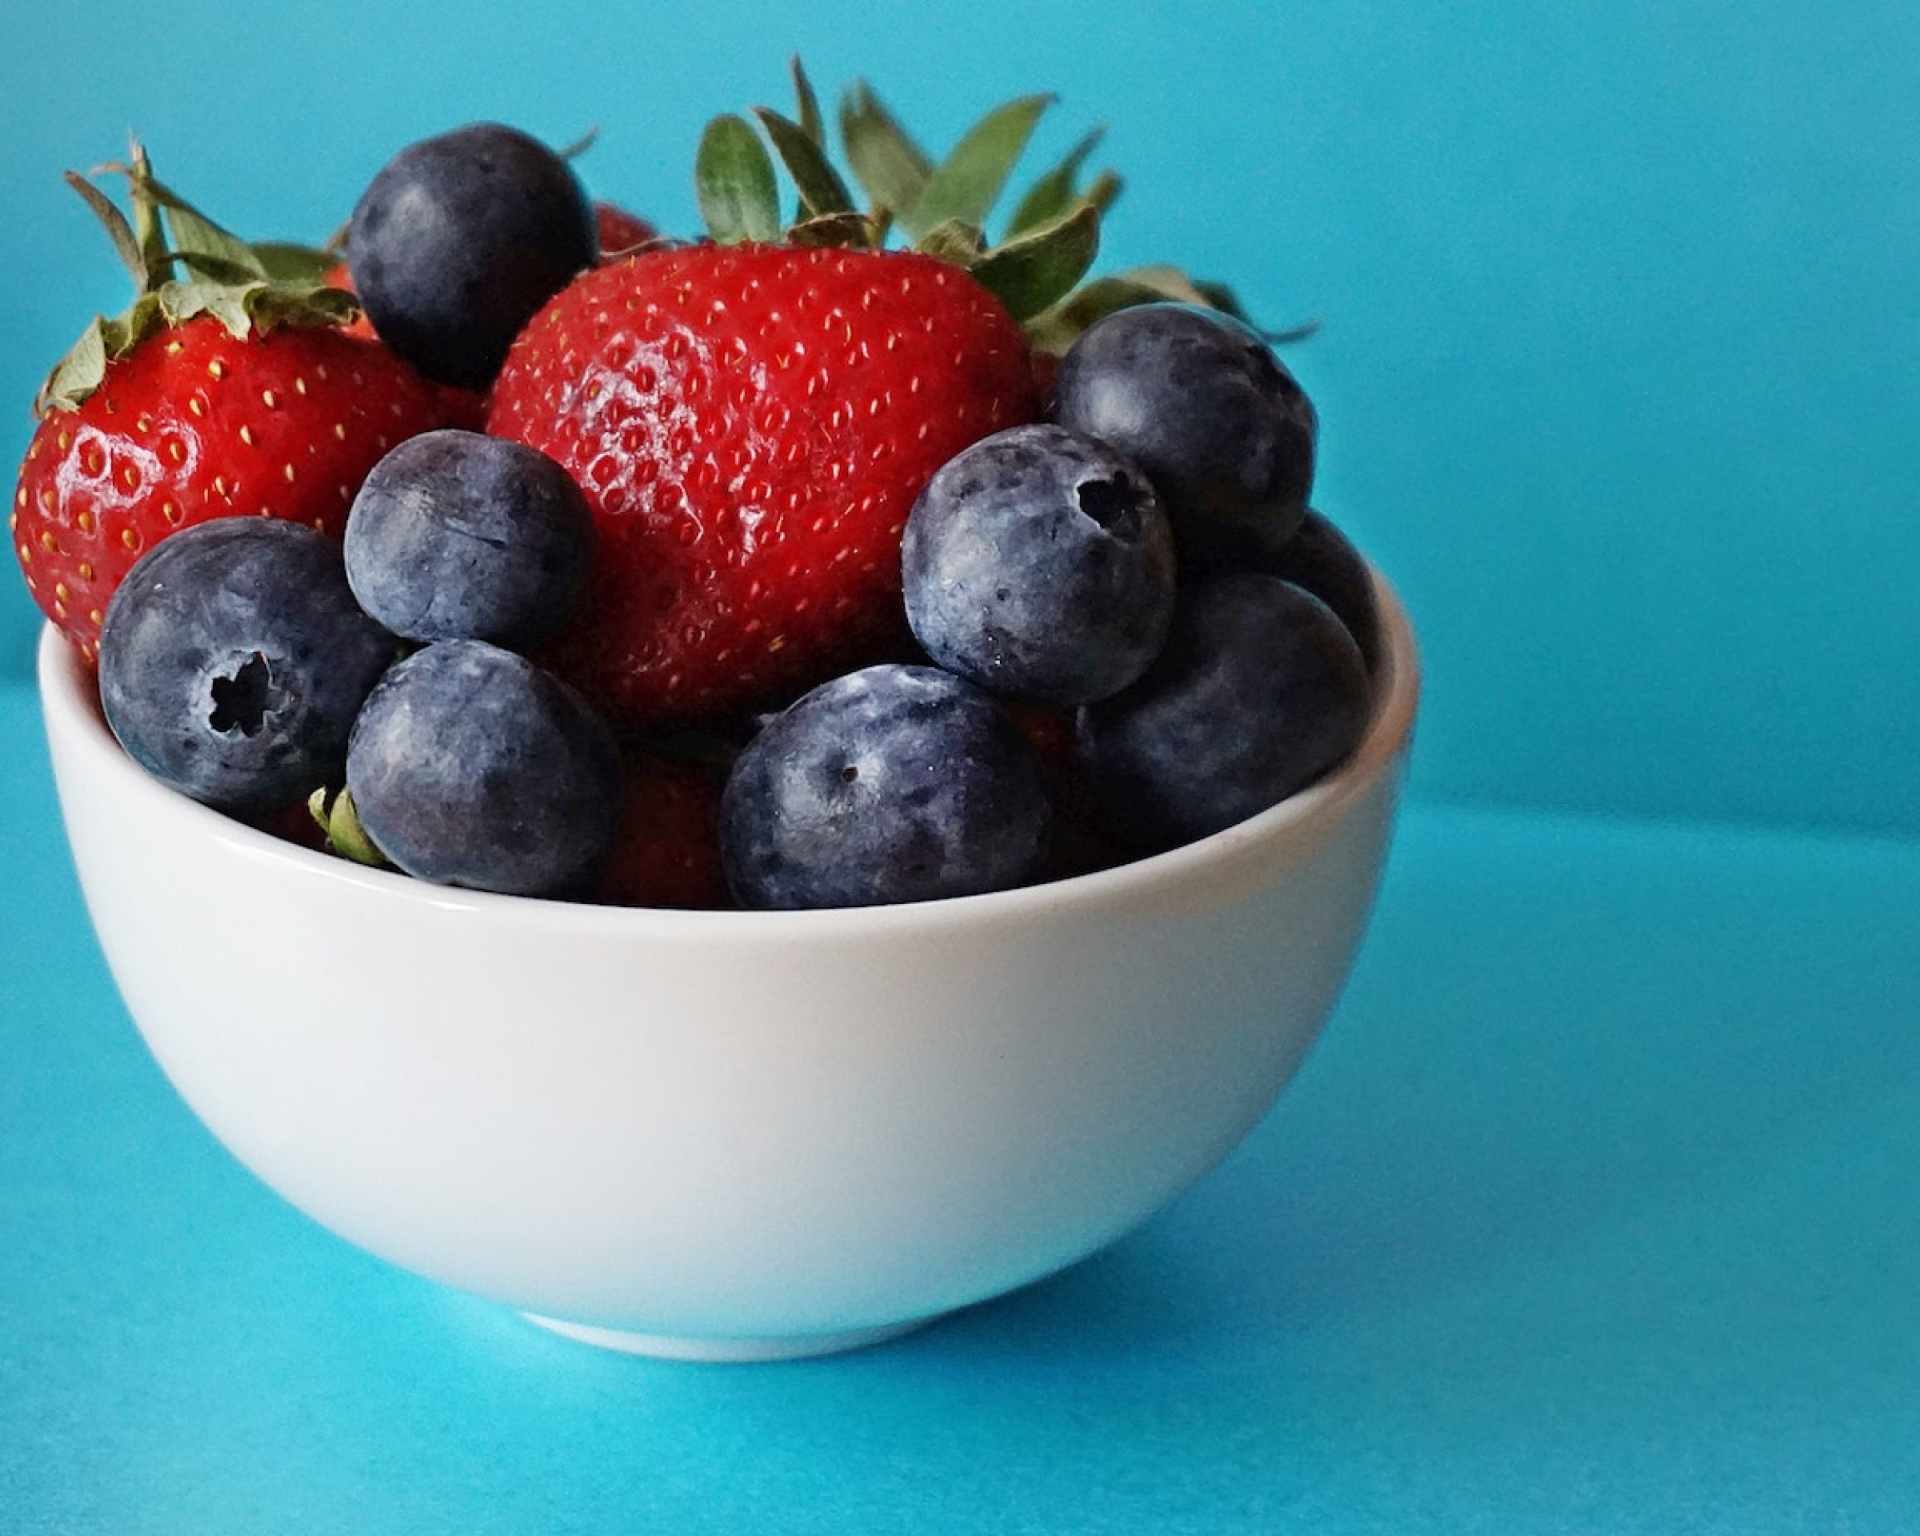 Bobuľové ovocie plné flavonoidov - jahody a čučoriedky